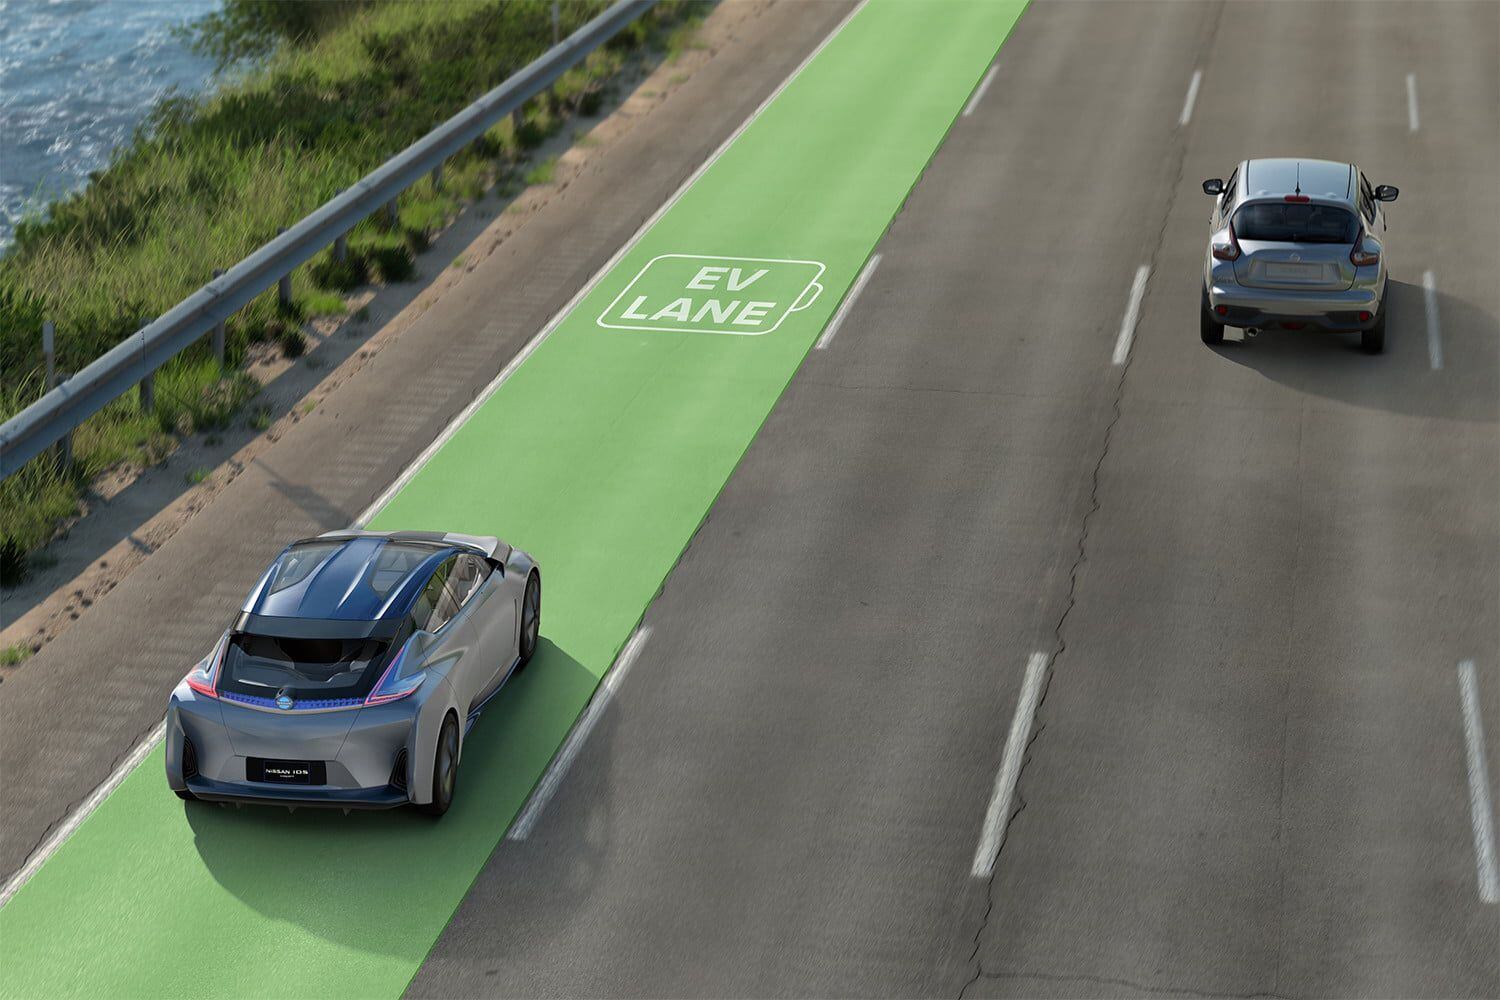 Los caminos con electricidad podrán reducir la necesidad de grandes autonomías en los autos, y permitir que sean más accesibles por tener baterías más pequeñas